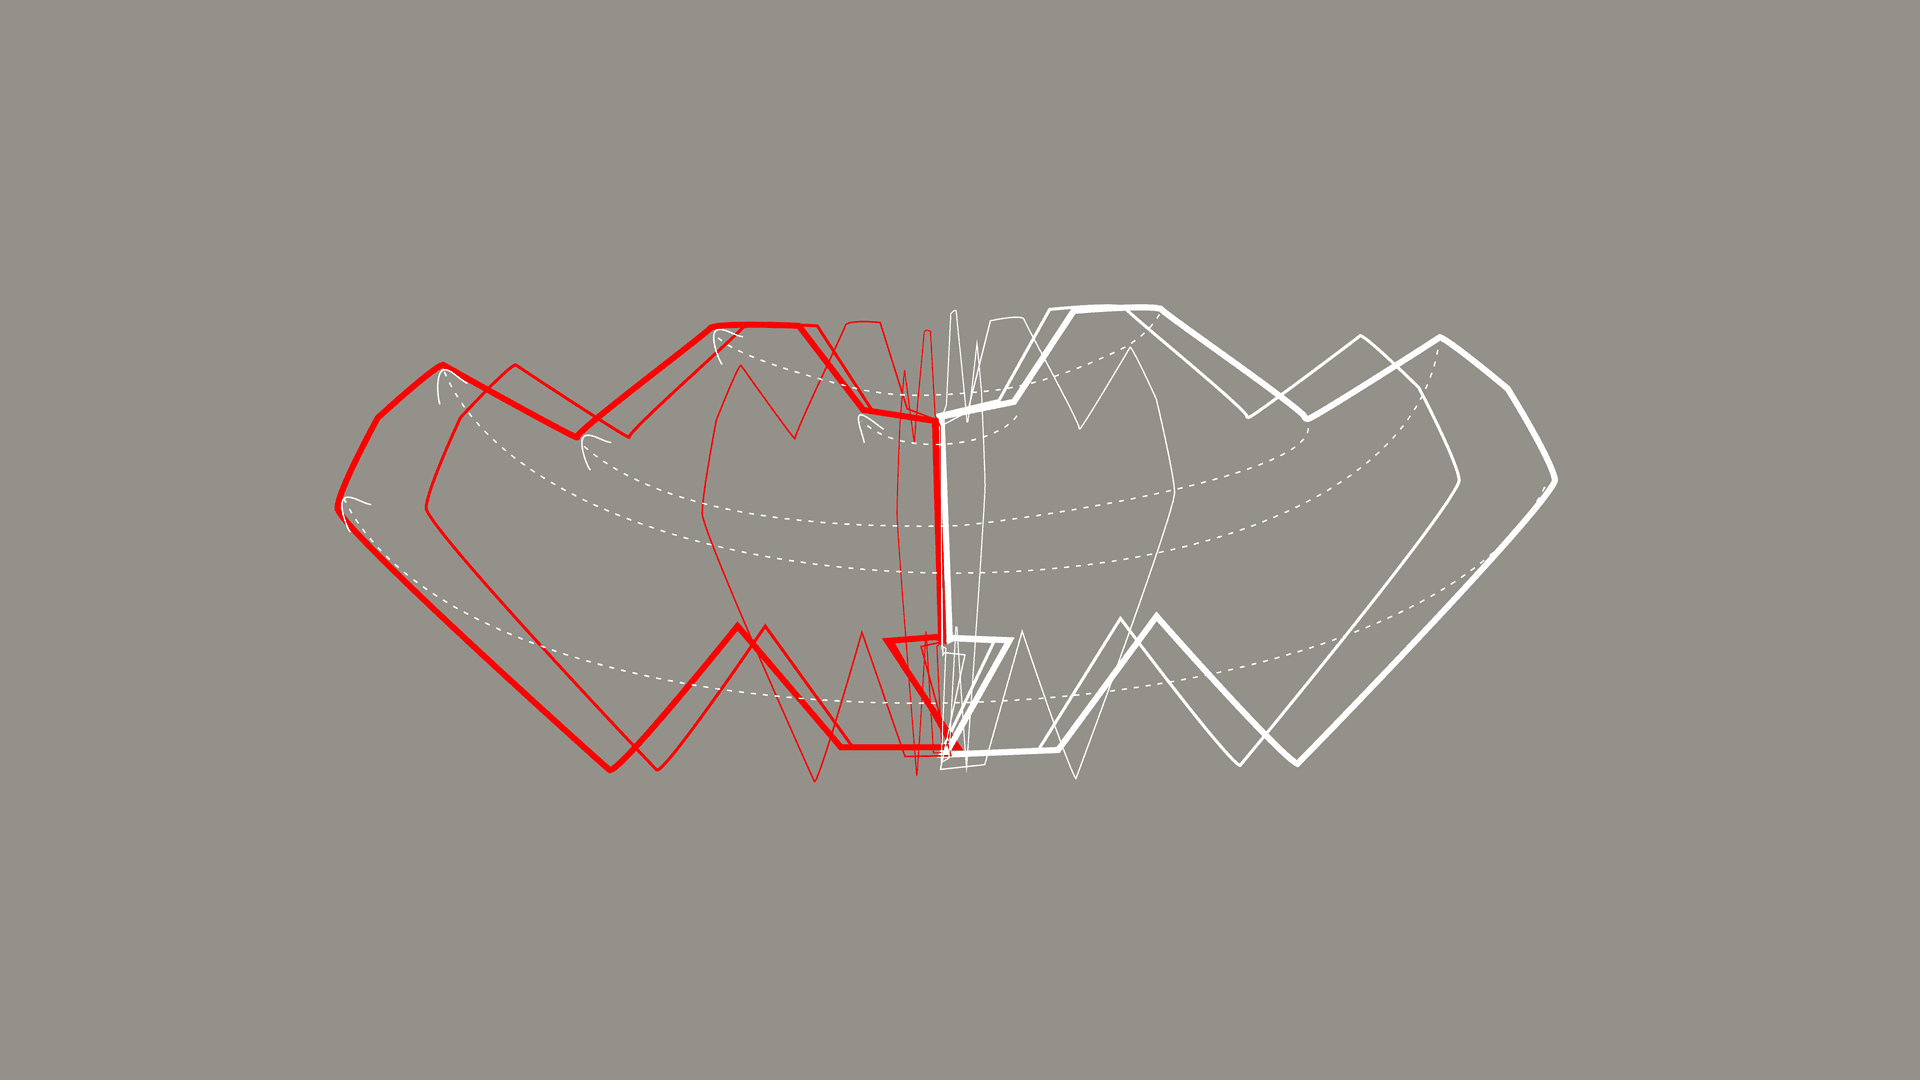 Illustration zweier symmetrisch gespiegelter, geometrischer Formen mit roter und weißer Kontur auf einer grauen Fläche